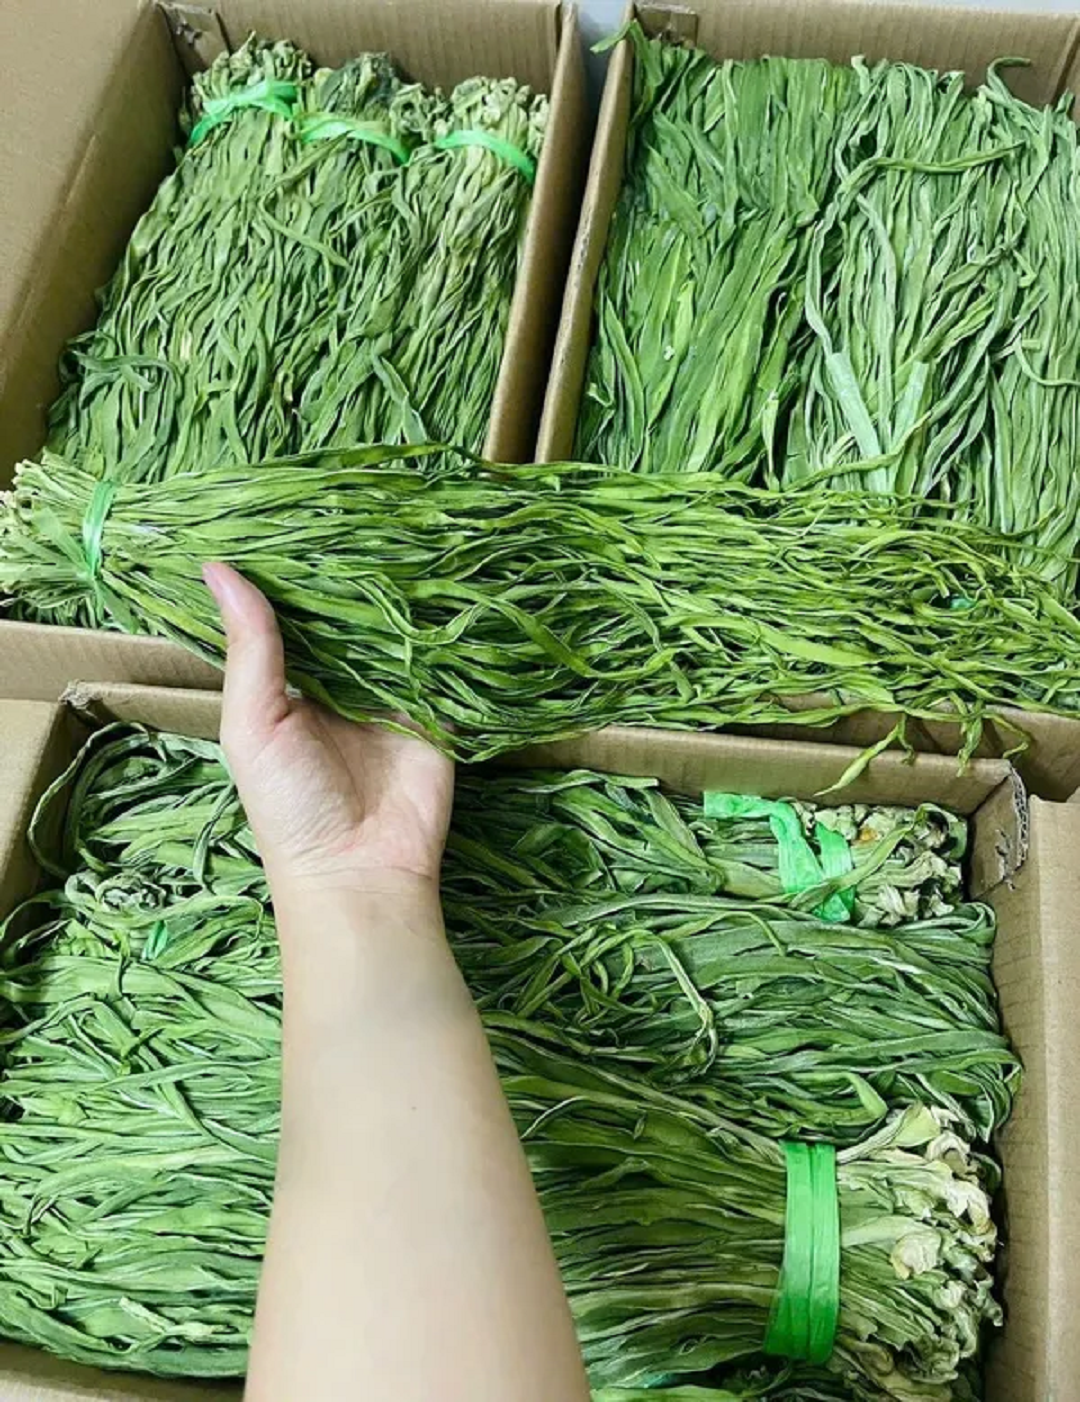 Đời sống - Loại rau trông như 'nắm cỏ',  xưa rẻ bèo nay lên tầm đặc sản, giá 500 nghìn đồng/kg